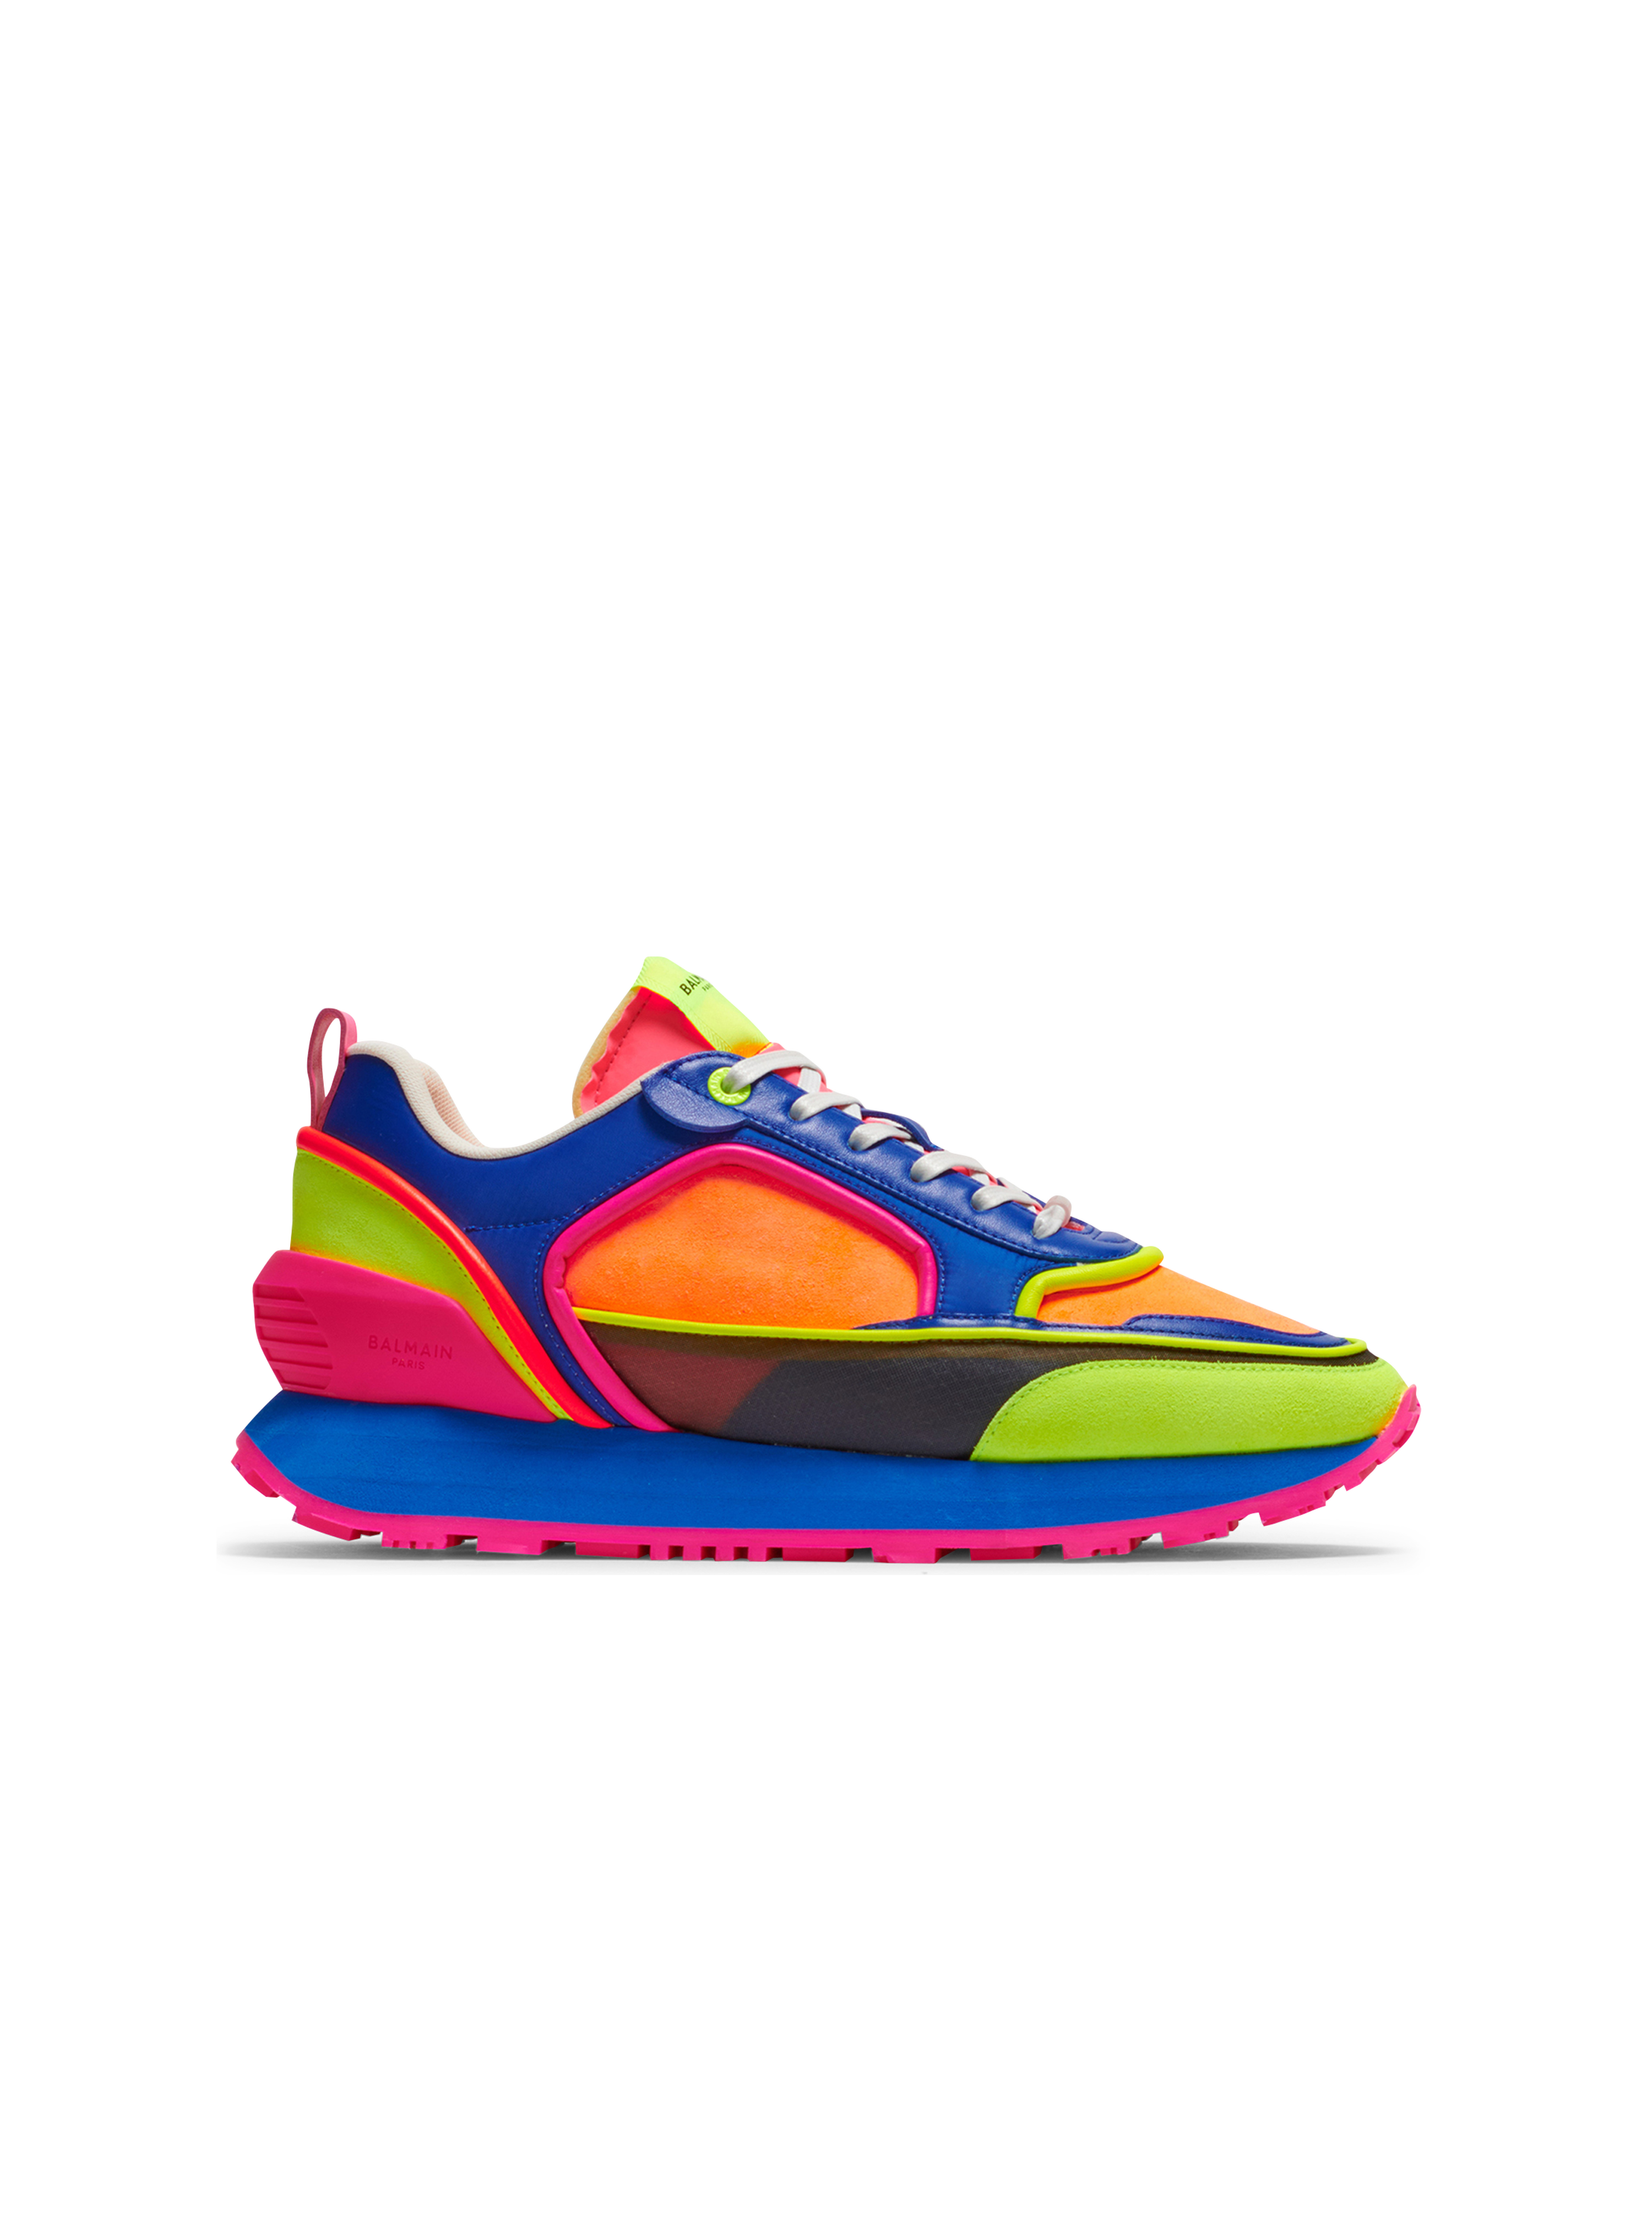 Sneakers Racer multicolor in camoscio, nylon e mesh, multicolore